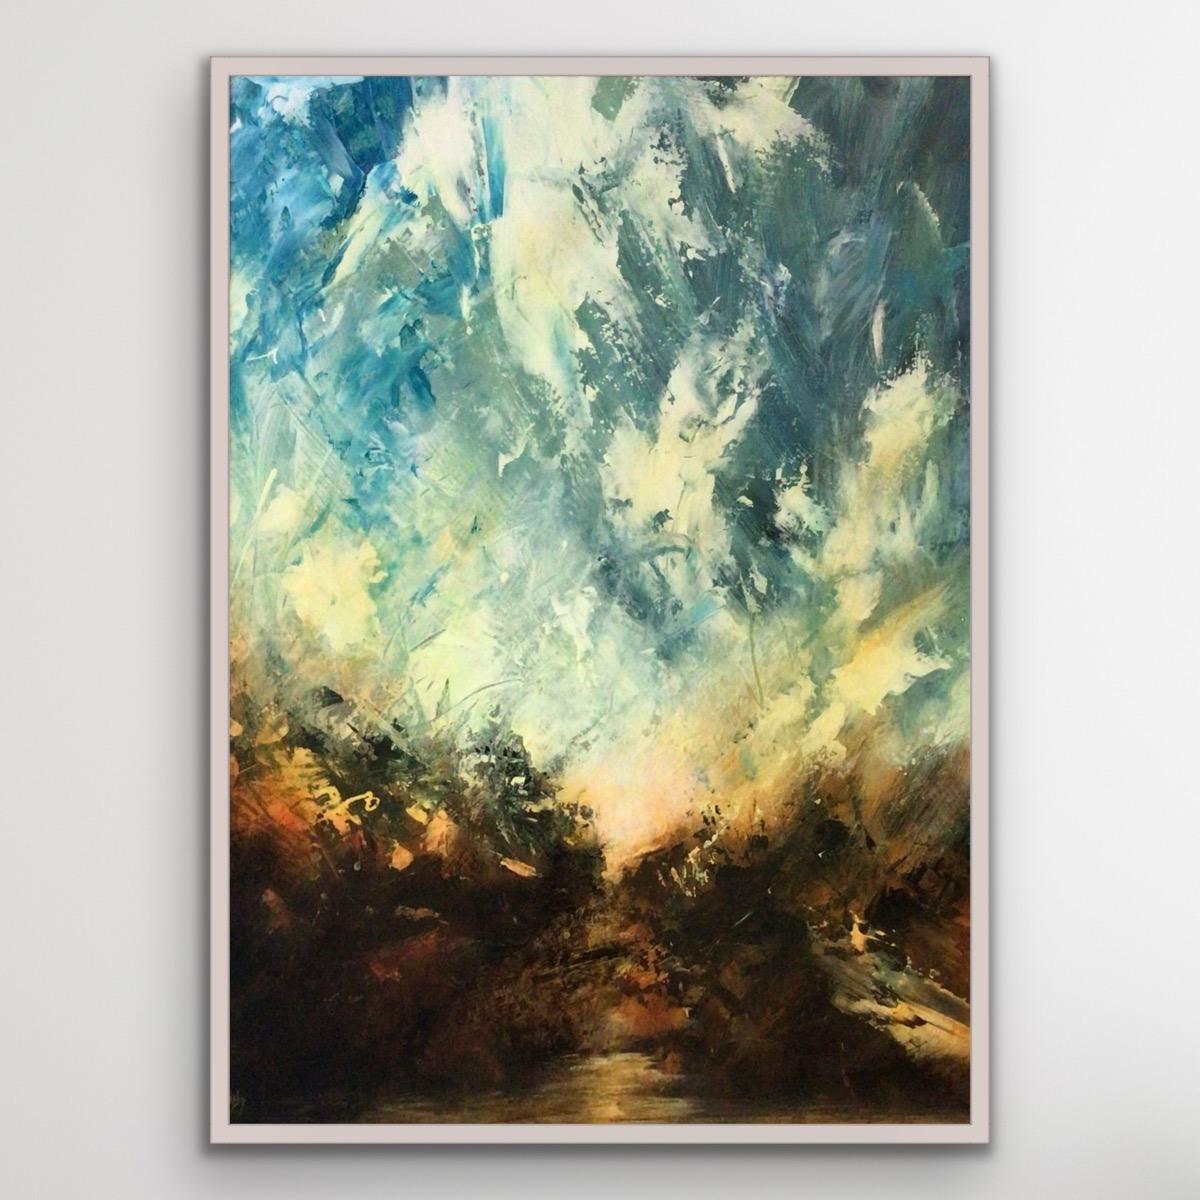 Le ciel, la rivière, la peinture abstraite de paysage contemporain, l'art du paysage marin, l'art du paysage - Impressionnisme Painting par David Hayes